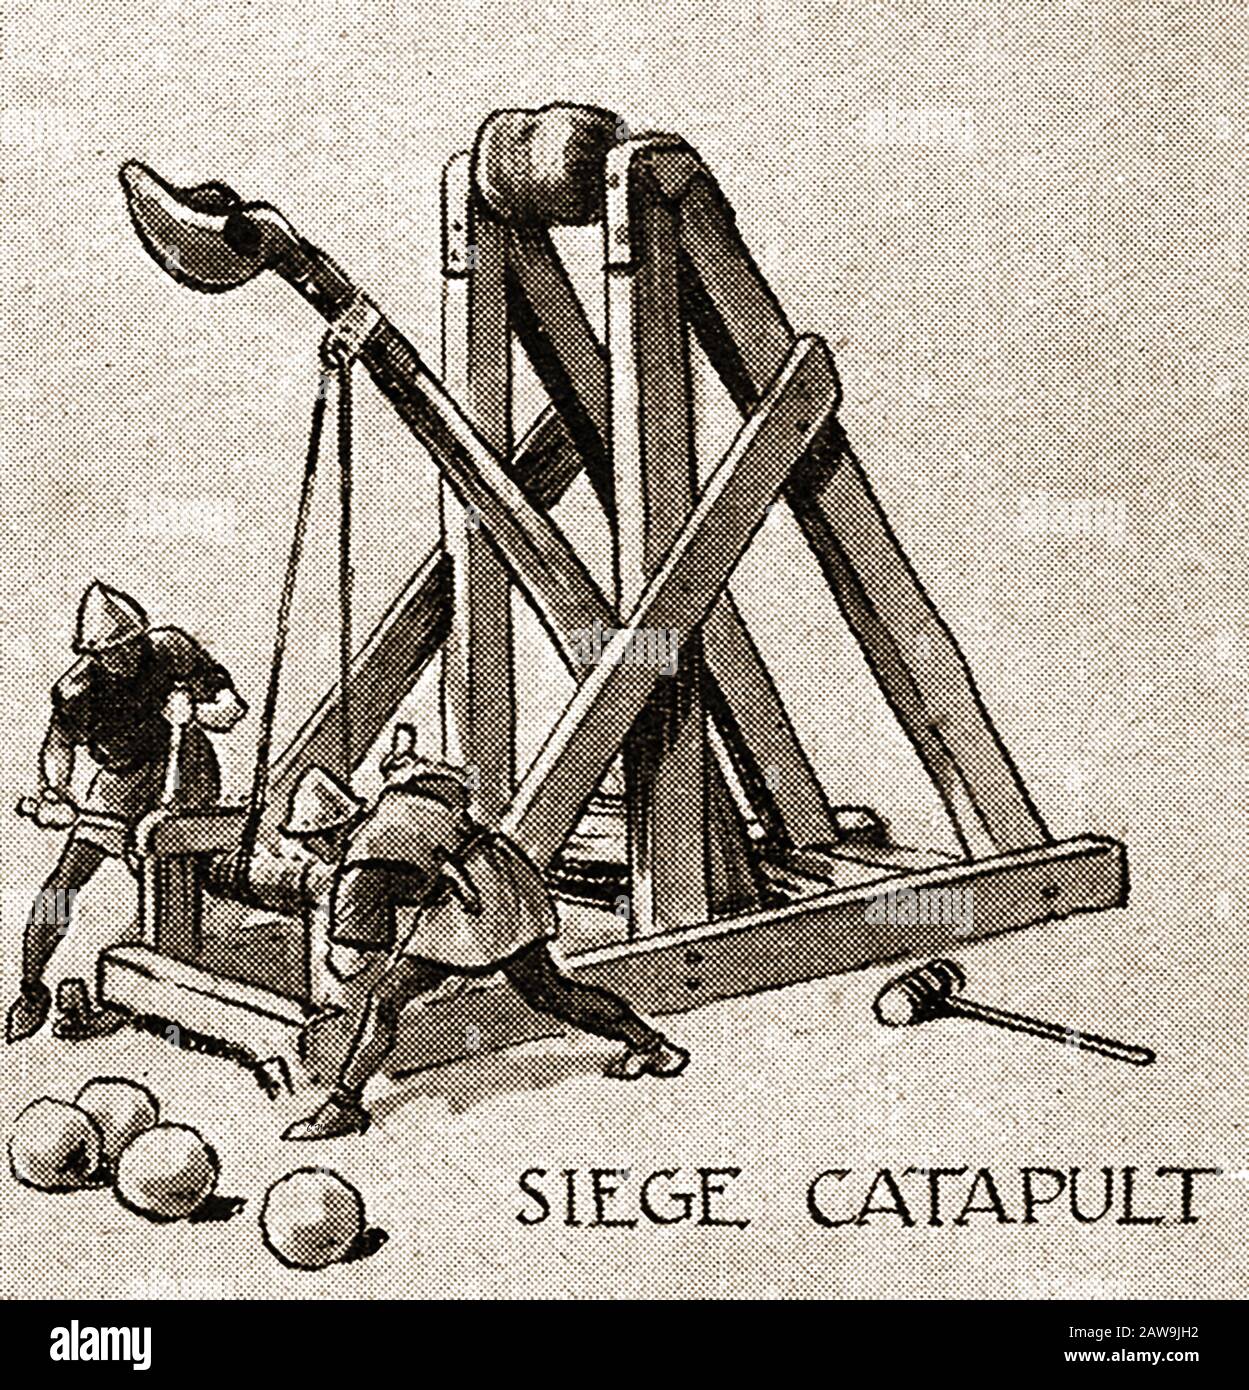 Un'illustrazione degli anni '40 che mostra le armi storiche di battaglia - assedio Catapult Foto Stock